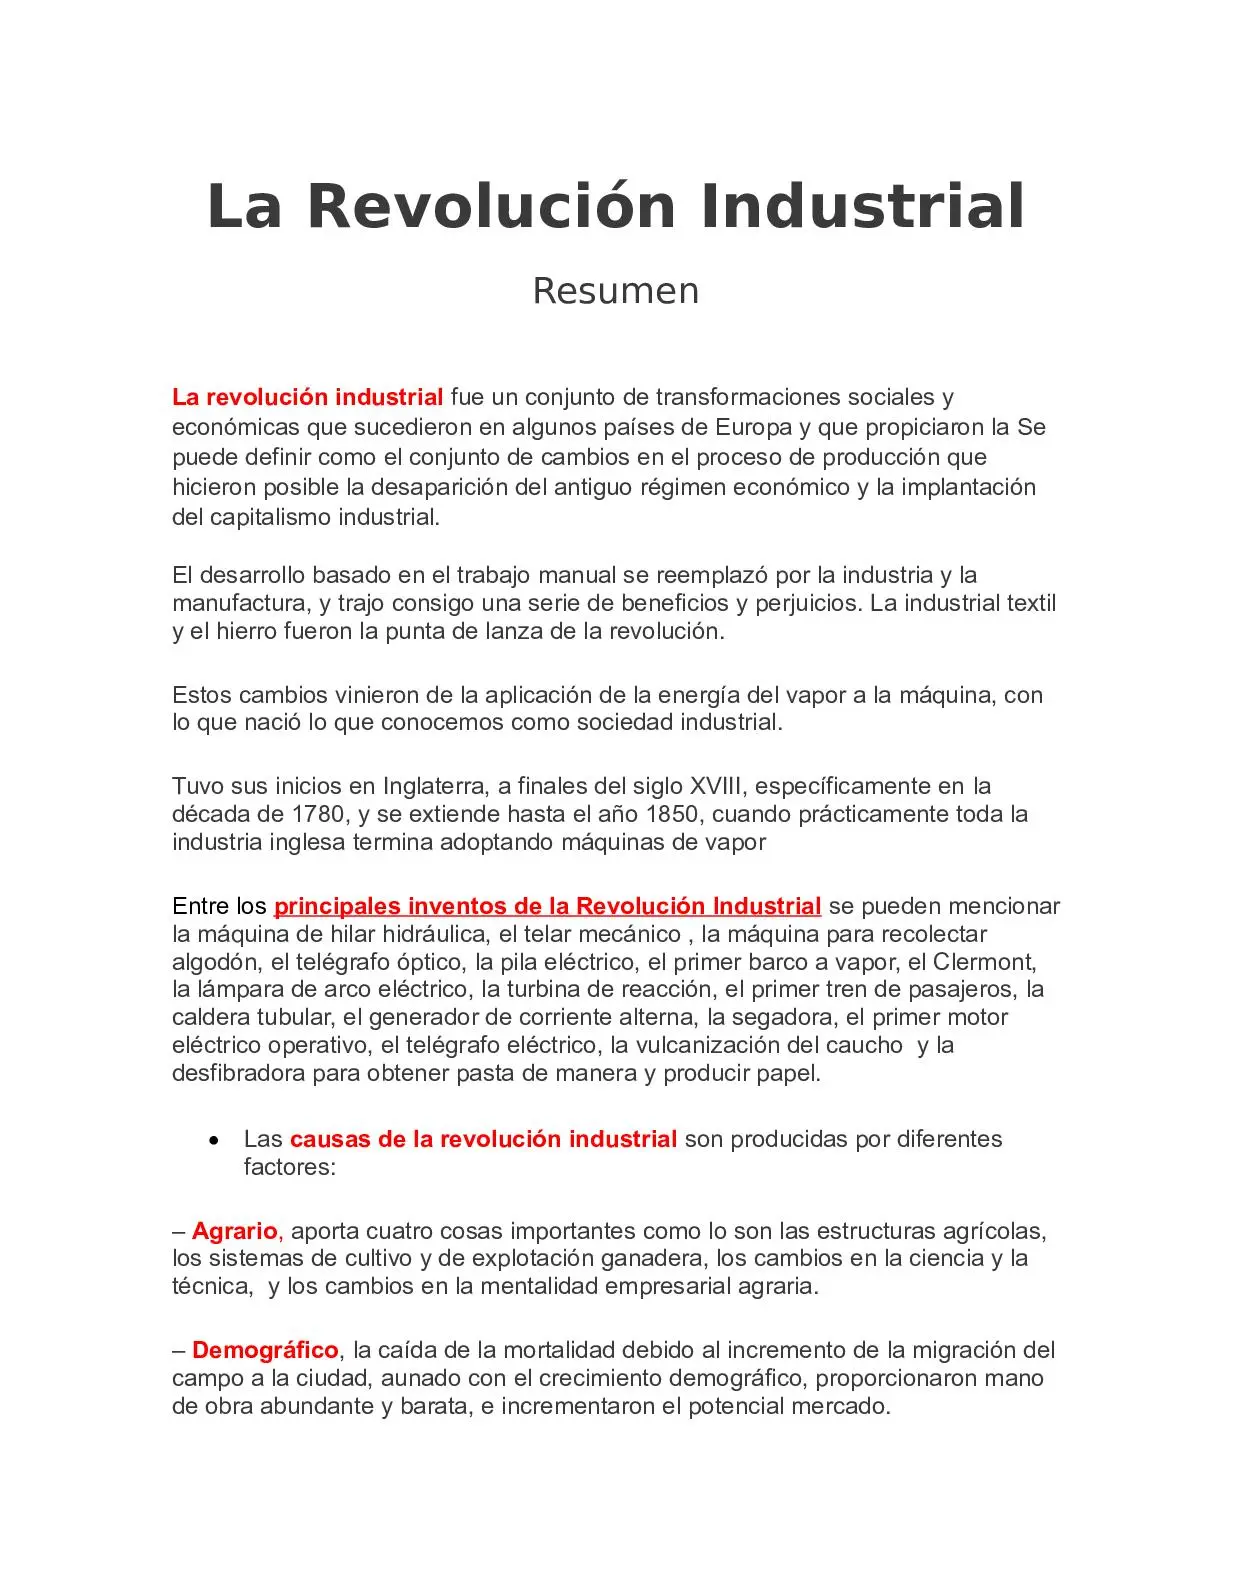 revolución industrial en inglaterra resumen - Cuándo surge la Revolución Industrial en Inglaterra